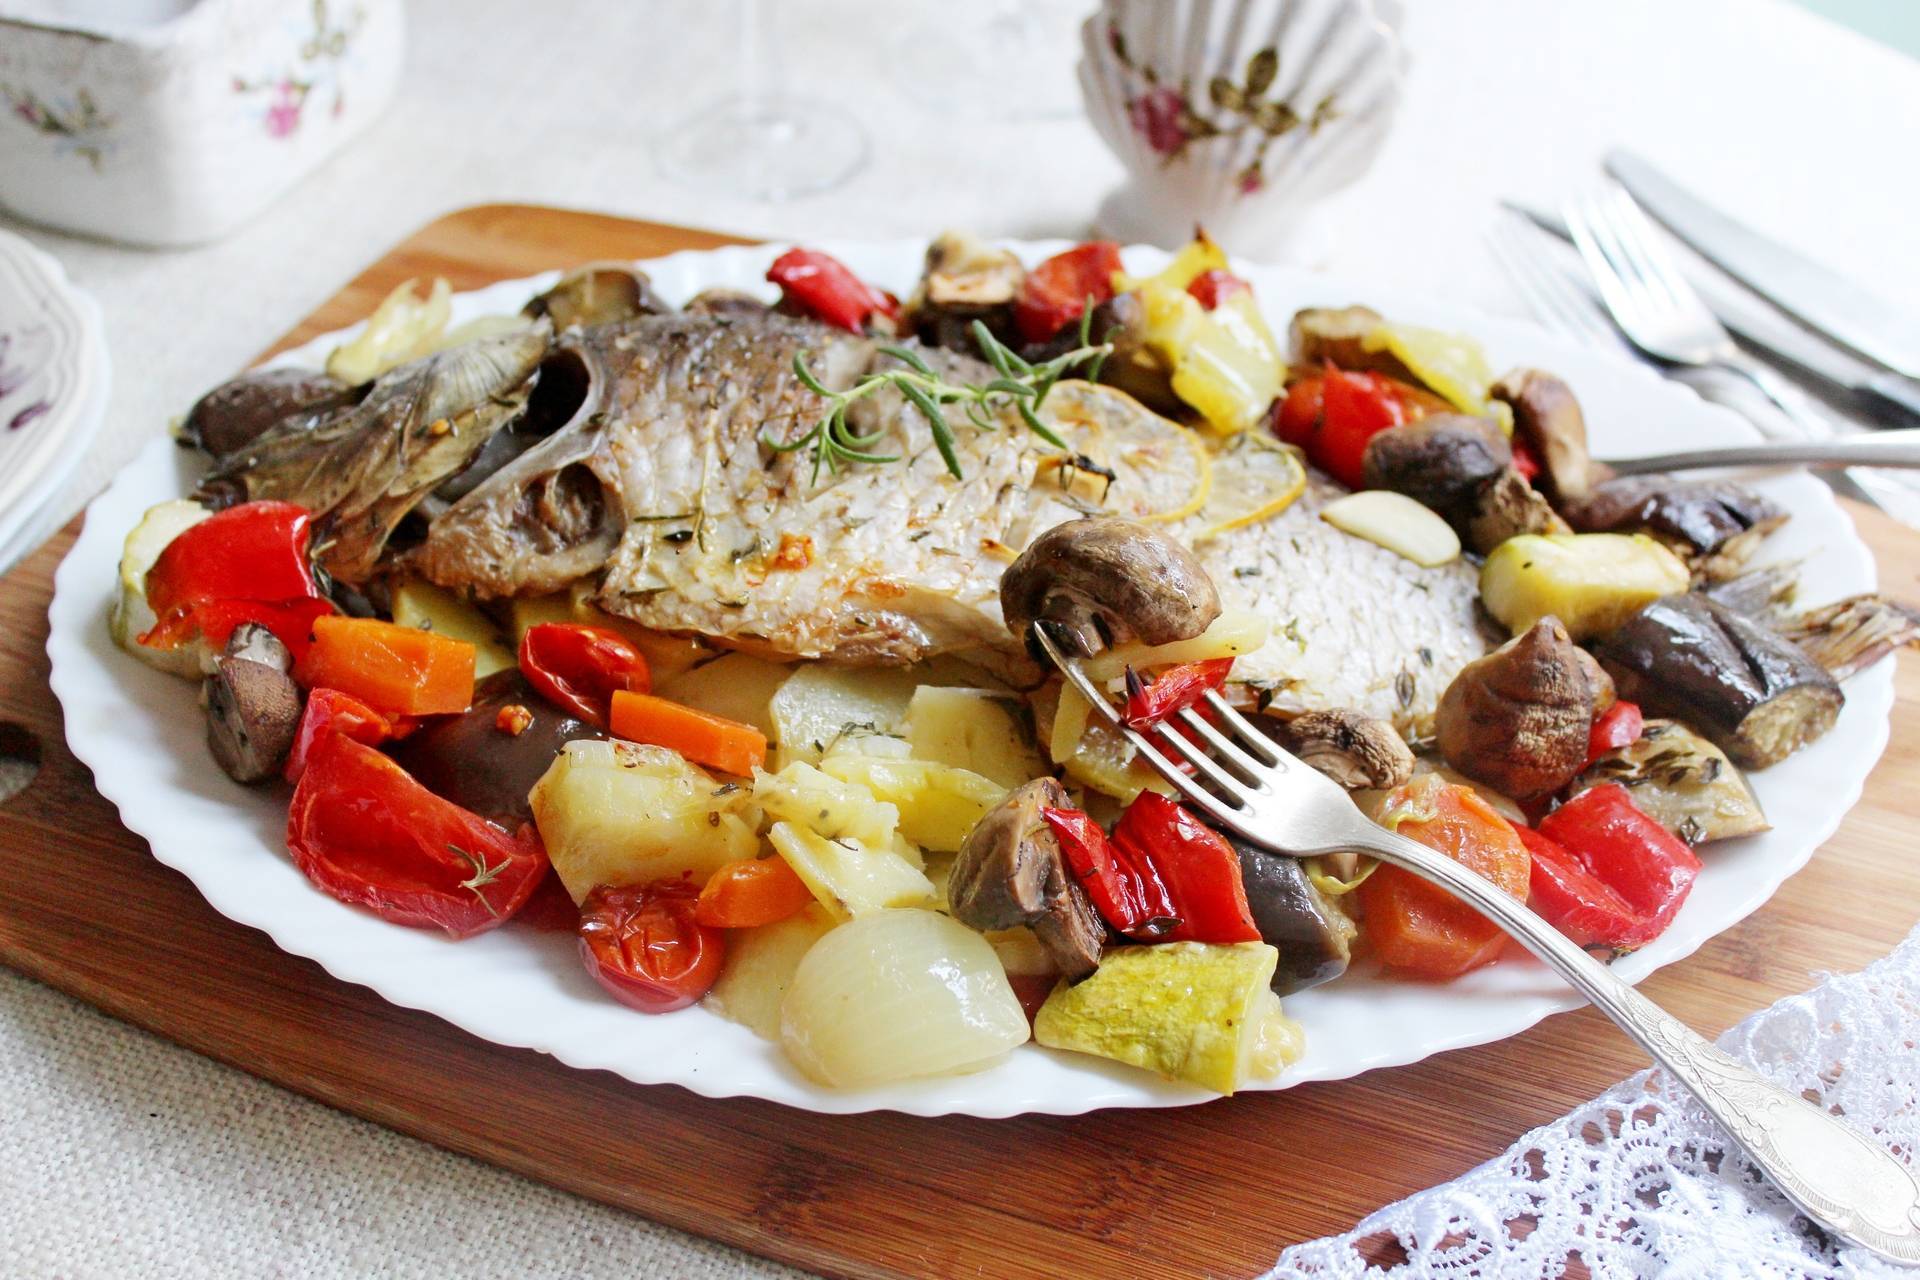 Рыба запеченная в духовке - лучшие рецепты. как правильно приготовить рыбу в духовке. - автор екатерина данилова - журнал женское мнение